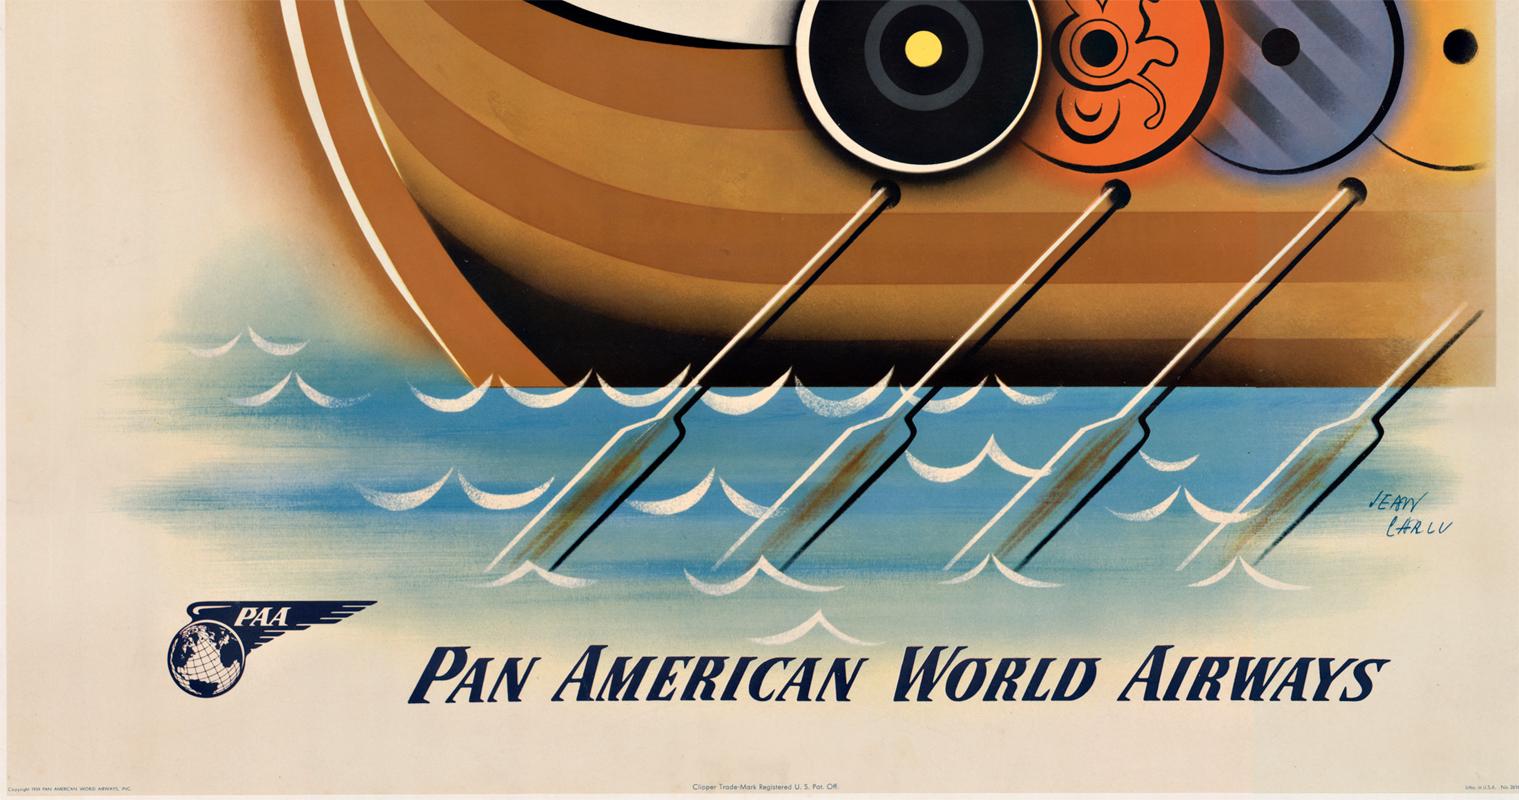 Original Vintage-Reiseplakat:  Pan American World Airways cy Clipper nach Skandinavien.    Auf Leinen gedruckt und rahmenfertig.
Im Mittelpunkt des Bildes steht ein drachenatmendes Wikingerschiff mit Rudern und Schilden an der Seite des Bootes.   Am